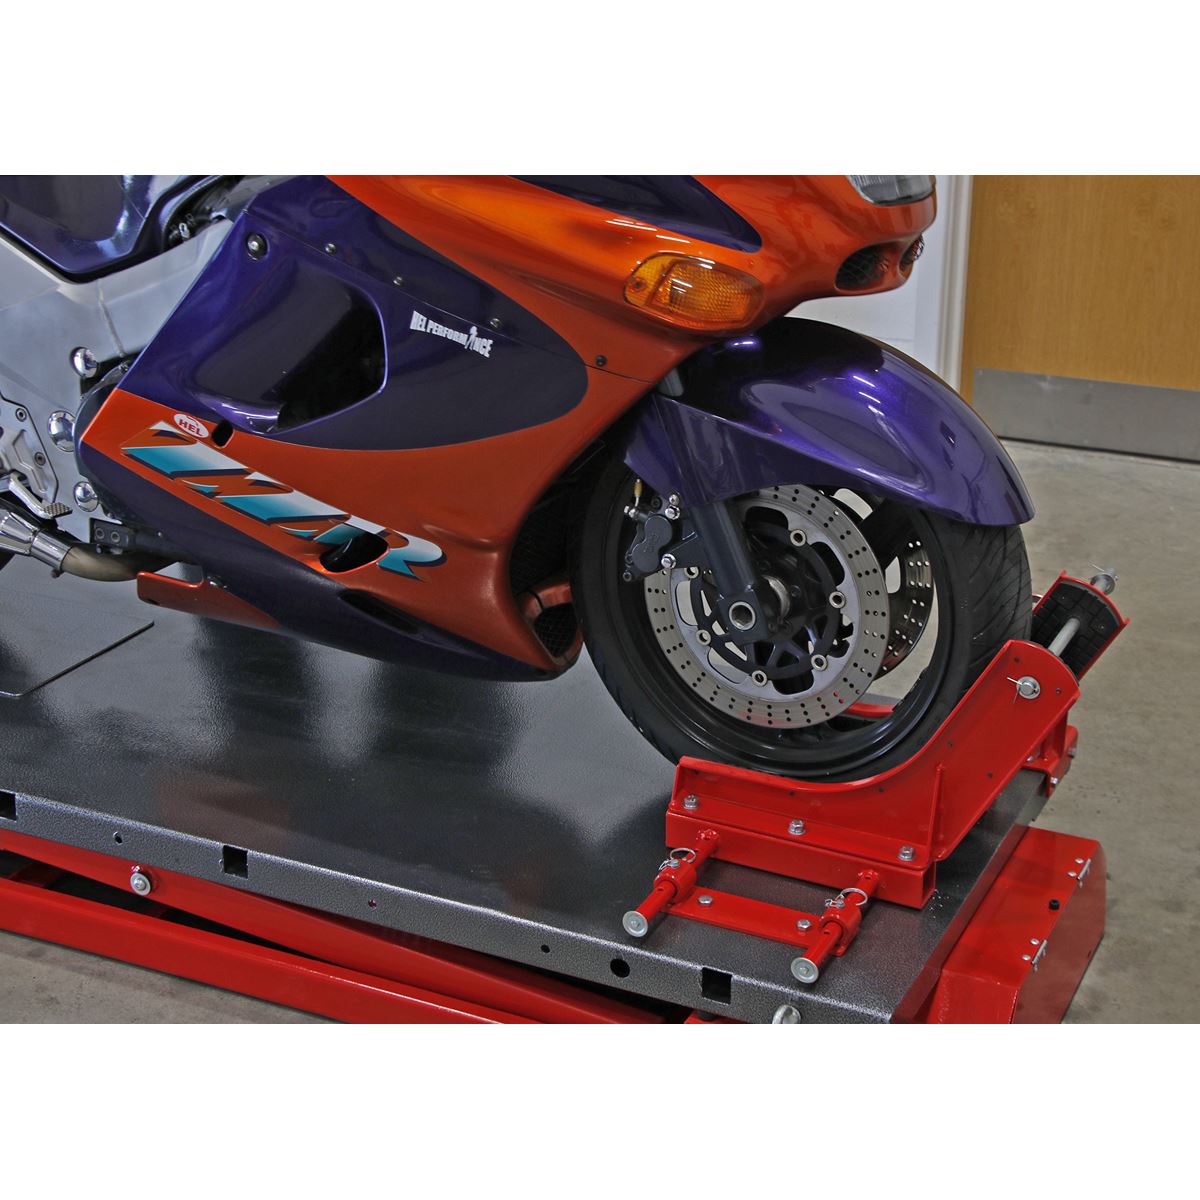 Sealey Heavy-Duty Electro/Hydraulic Motorcycle Lift 680kg Capacity